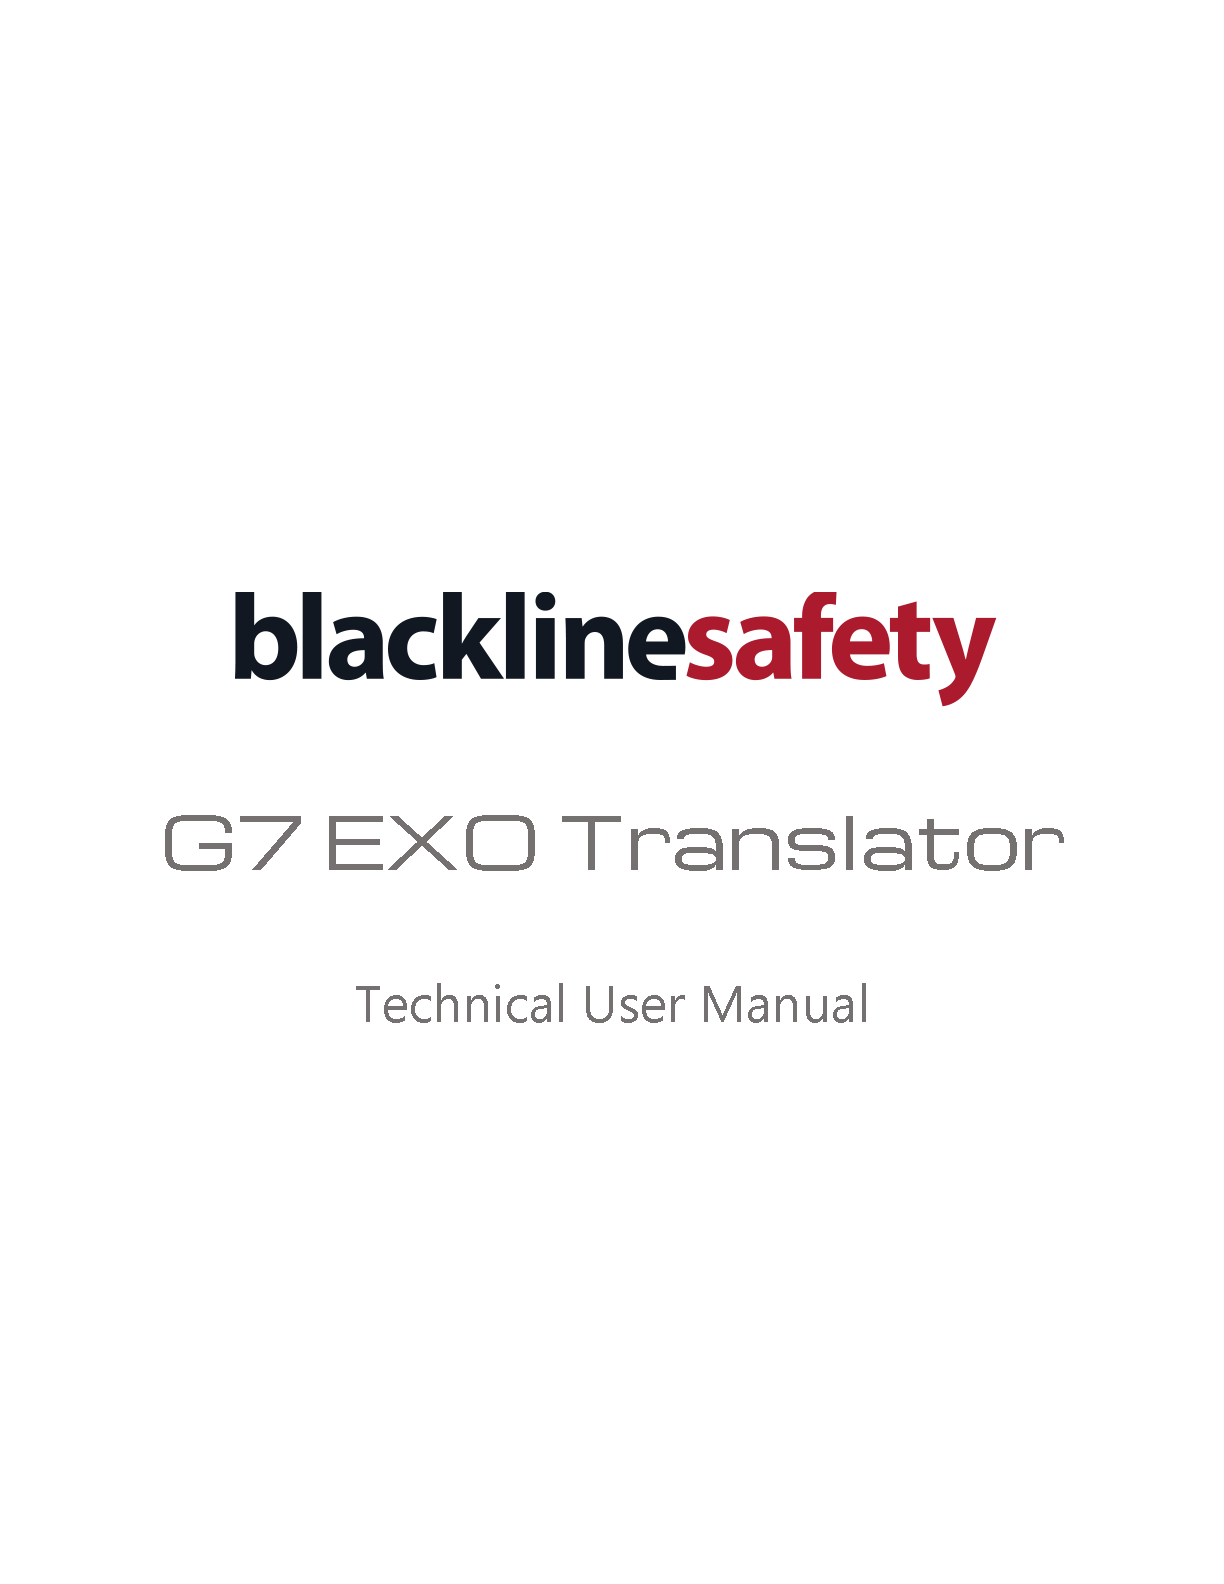 G7 EXO Translator Manual Técnico do Usuário Página de Capa